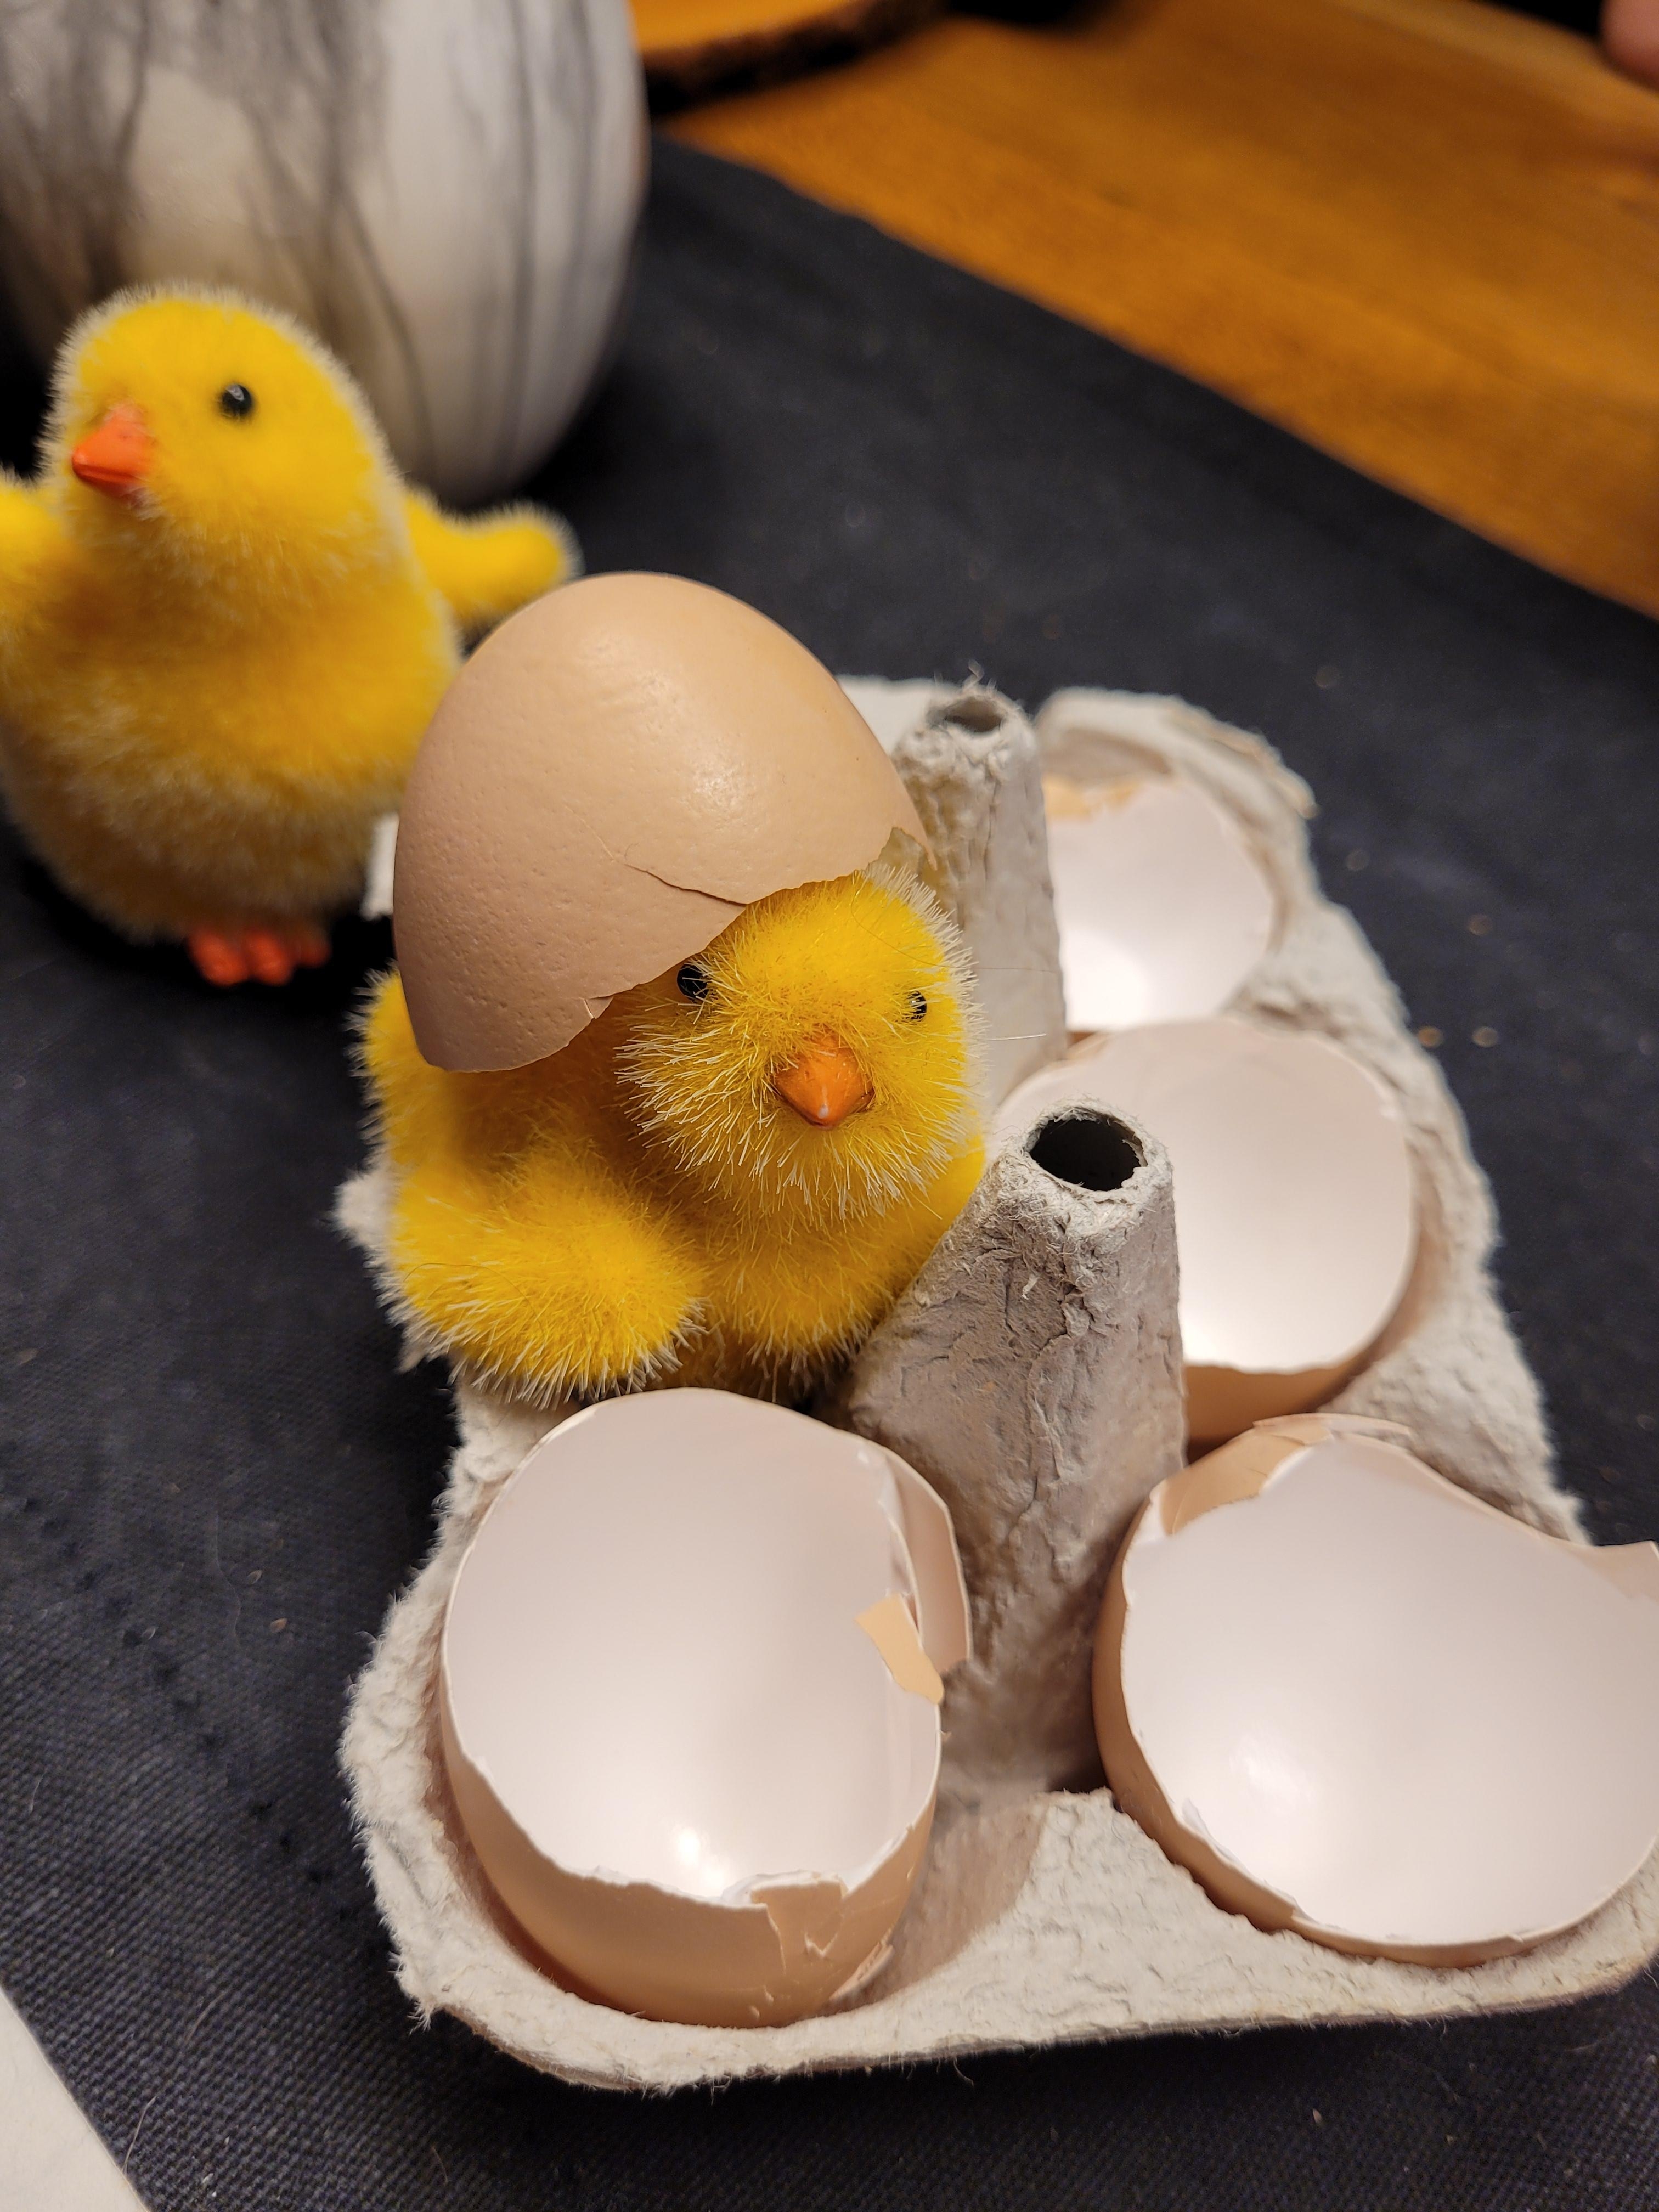 Frisch geschlüpft - mit eierschalen von unseren Hühnern 🥰 #Ostern #Osterdeko 